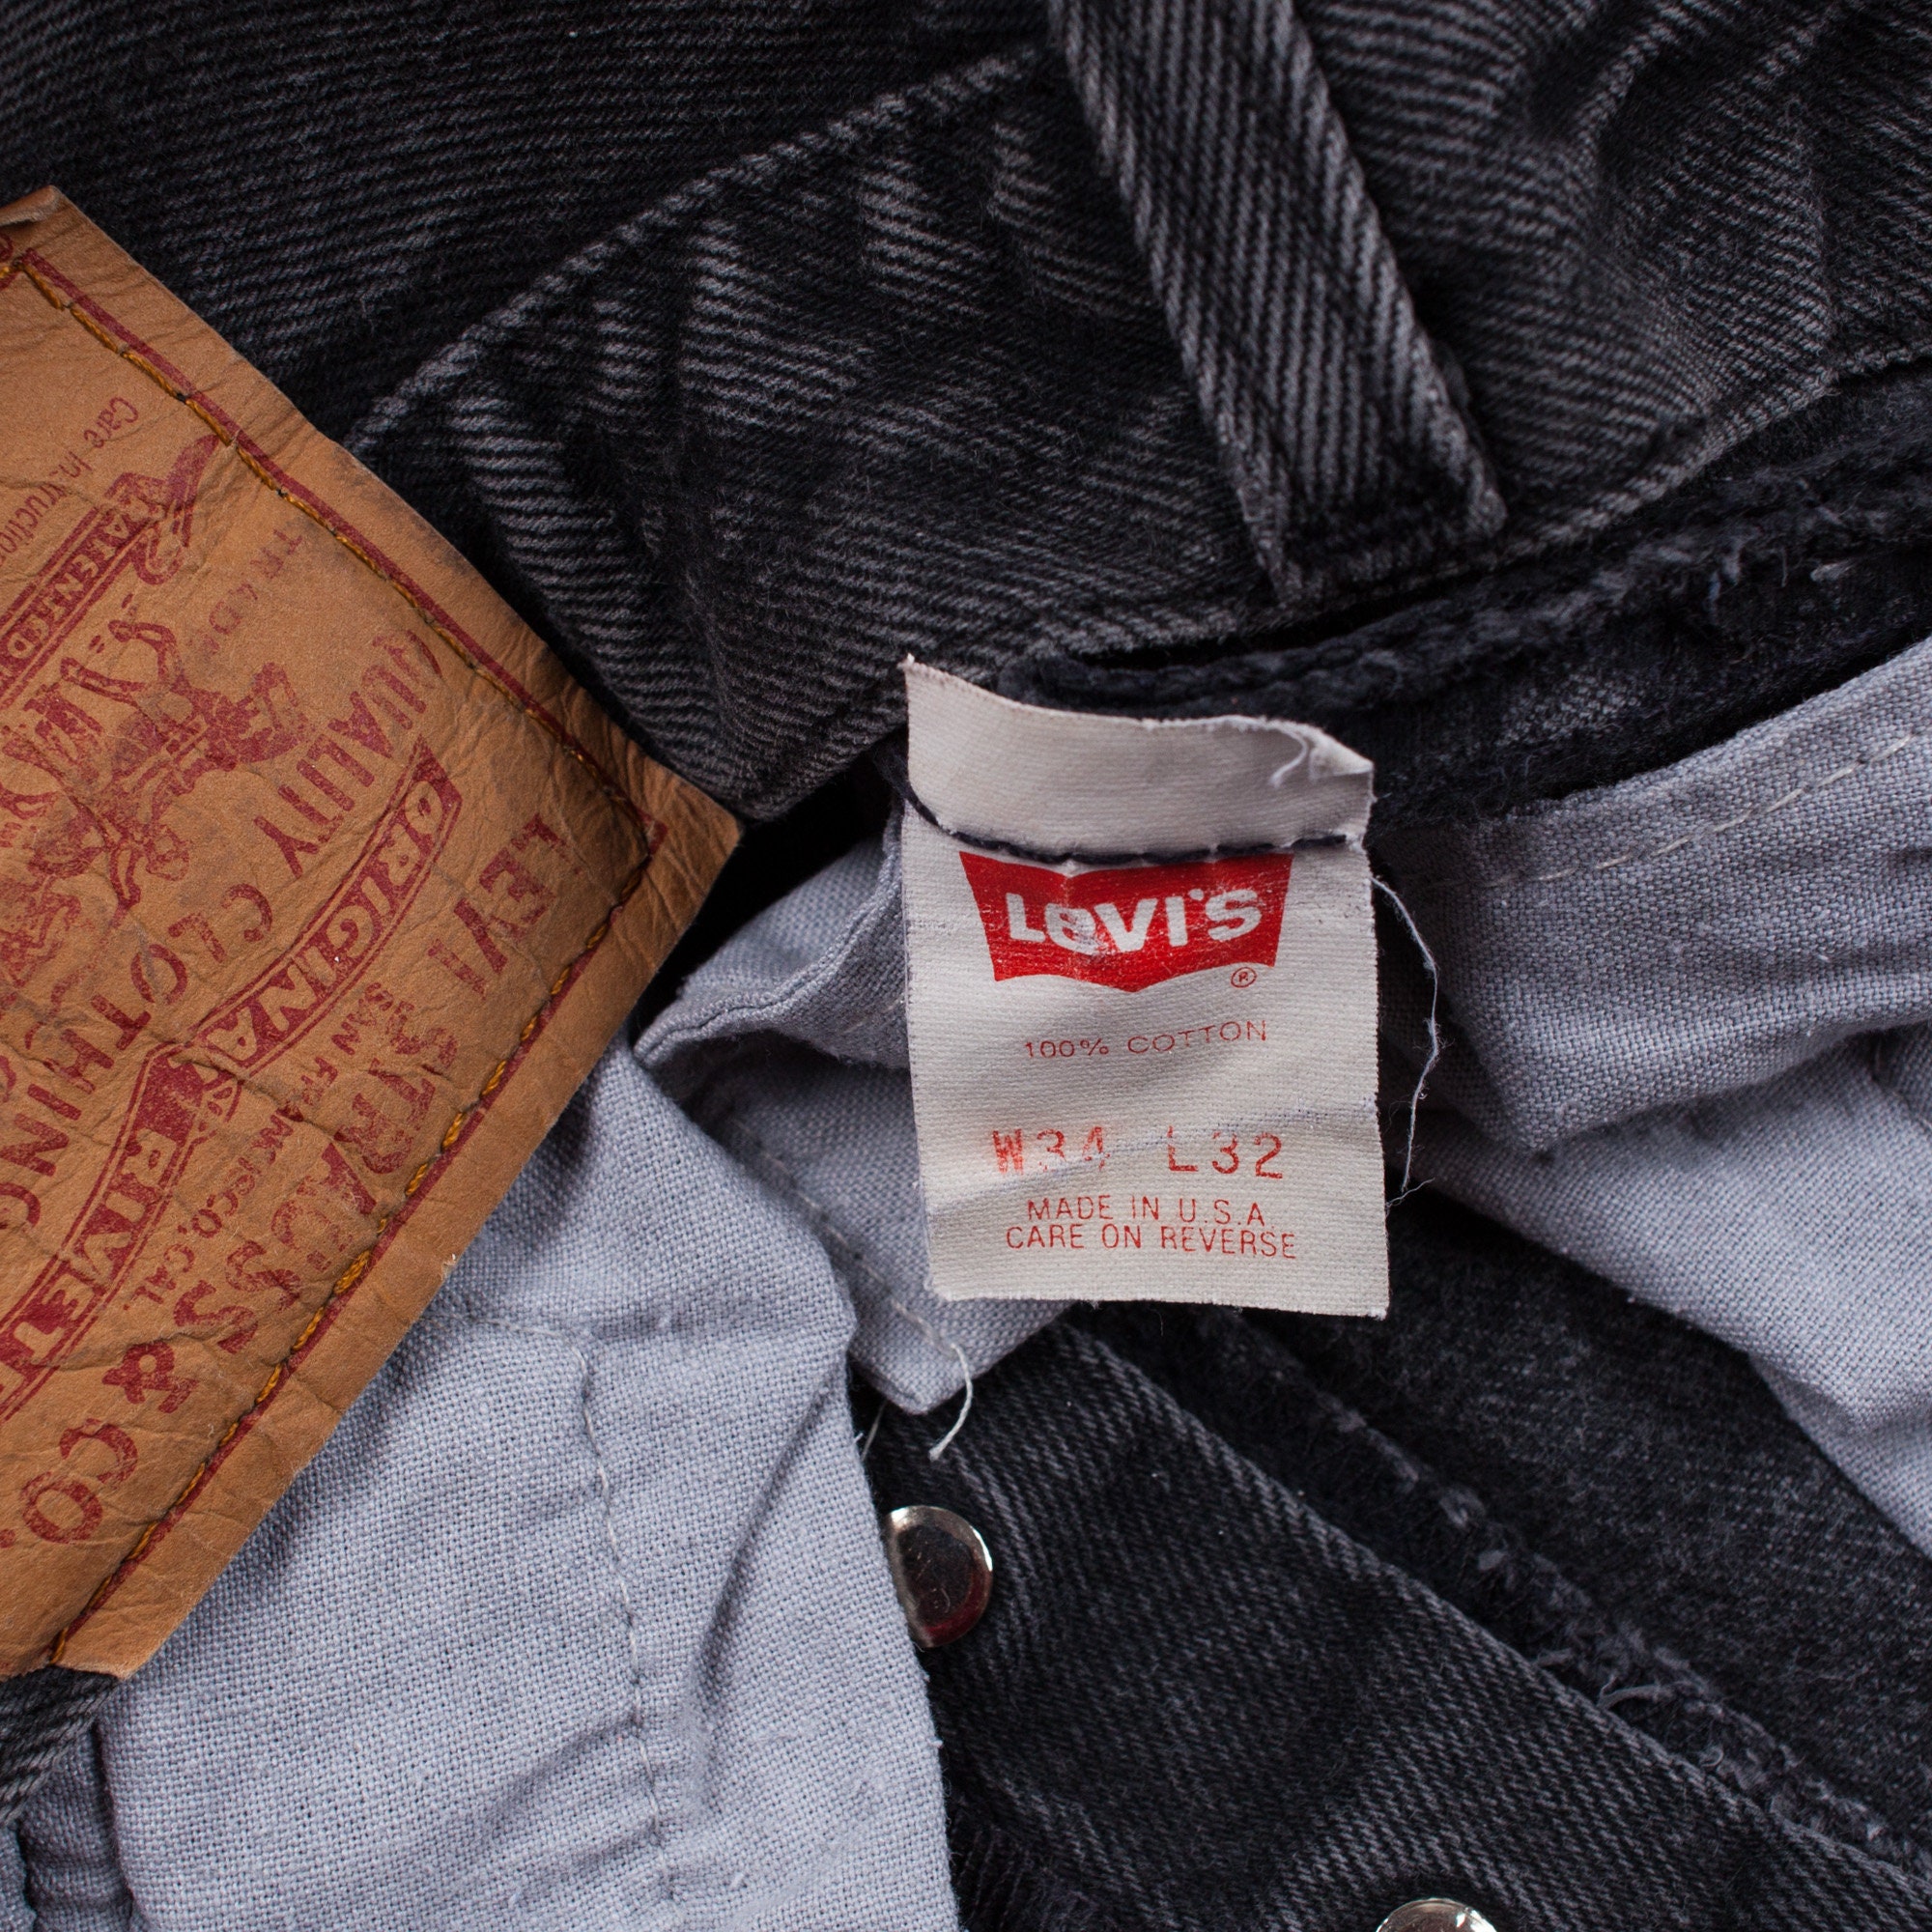 Vintage Levis 501 Jeans 31 X 32 USA Made 90s Dark Wash - Etsy Denmark